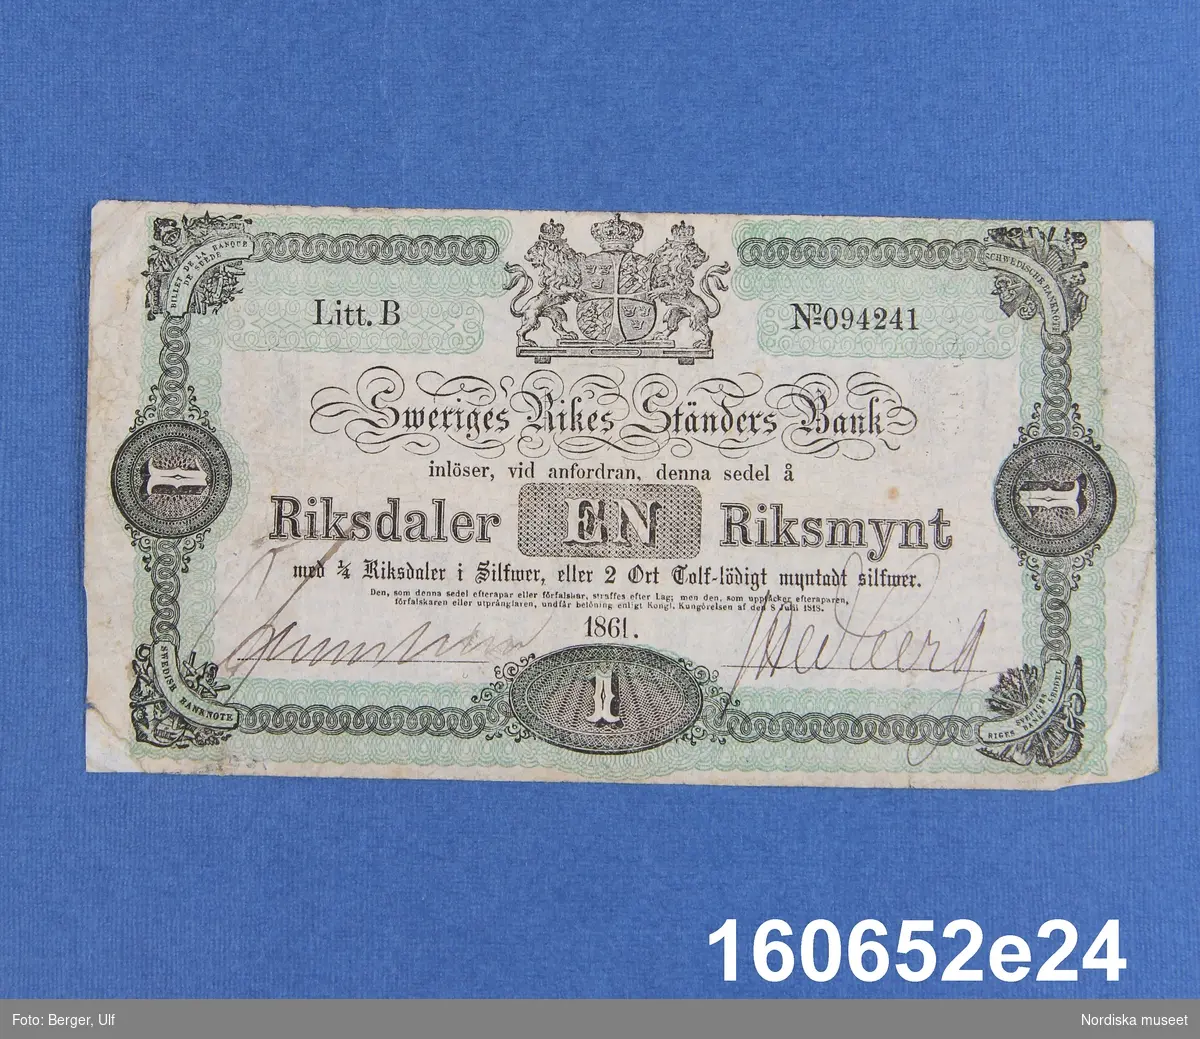 Sveriges Rikes Ständers Bank, 1 riksdaler riksmynt. Daterad 1861, litt B nr 094241.